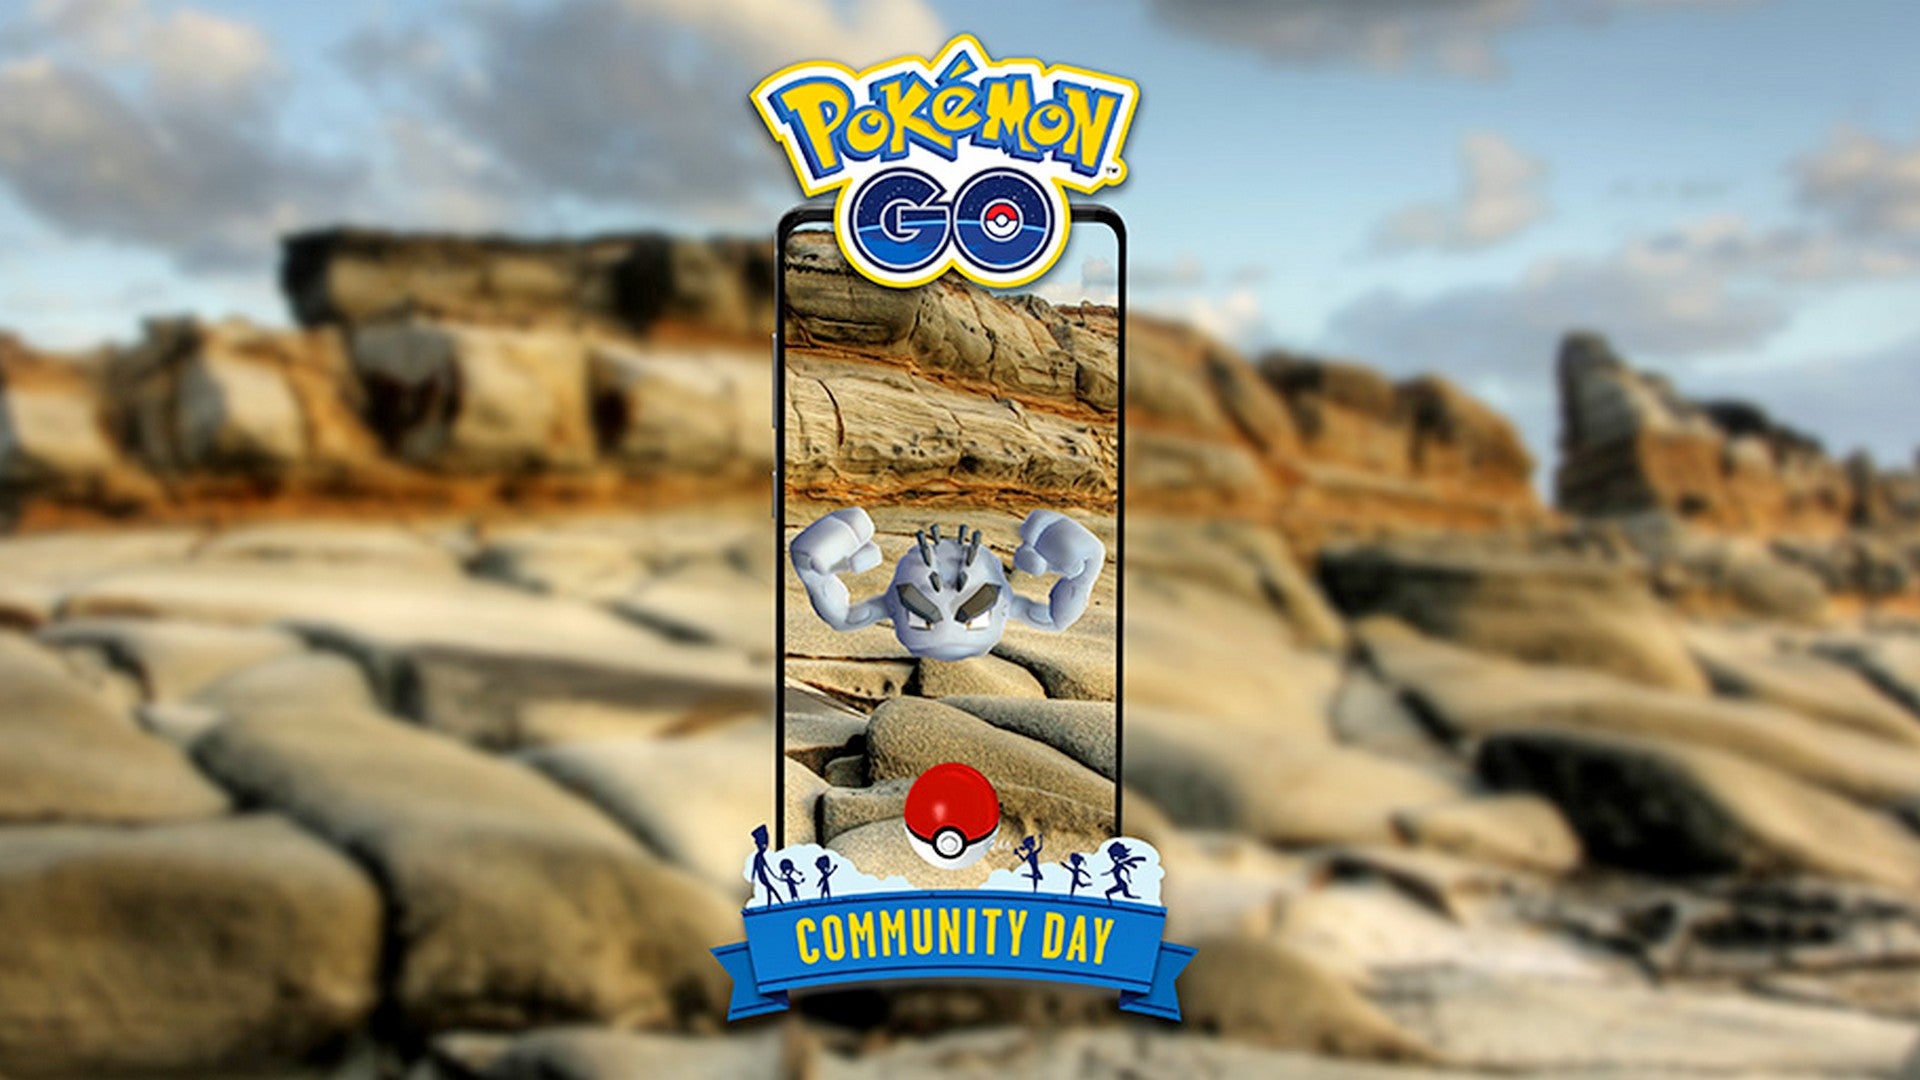 Bilder zu Pokémon Go: Community-Day-Treffpunkte in mehreren Städten angekündigt